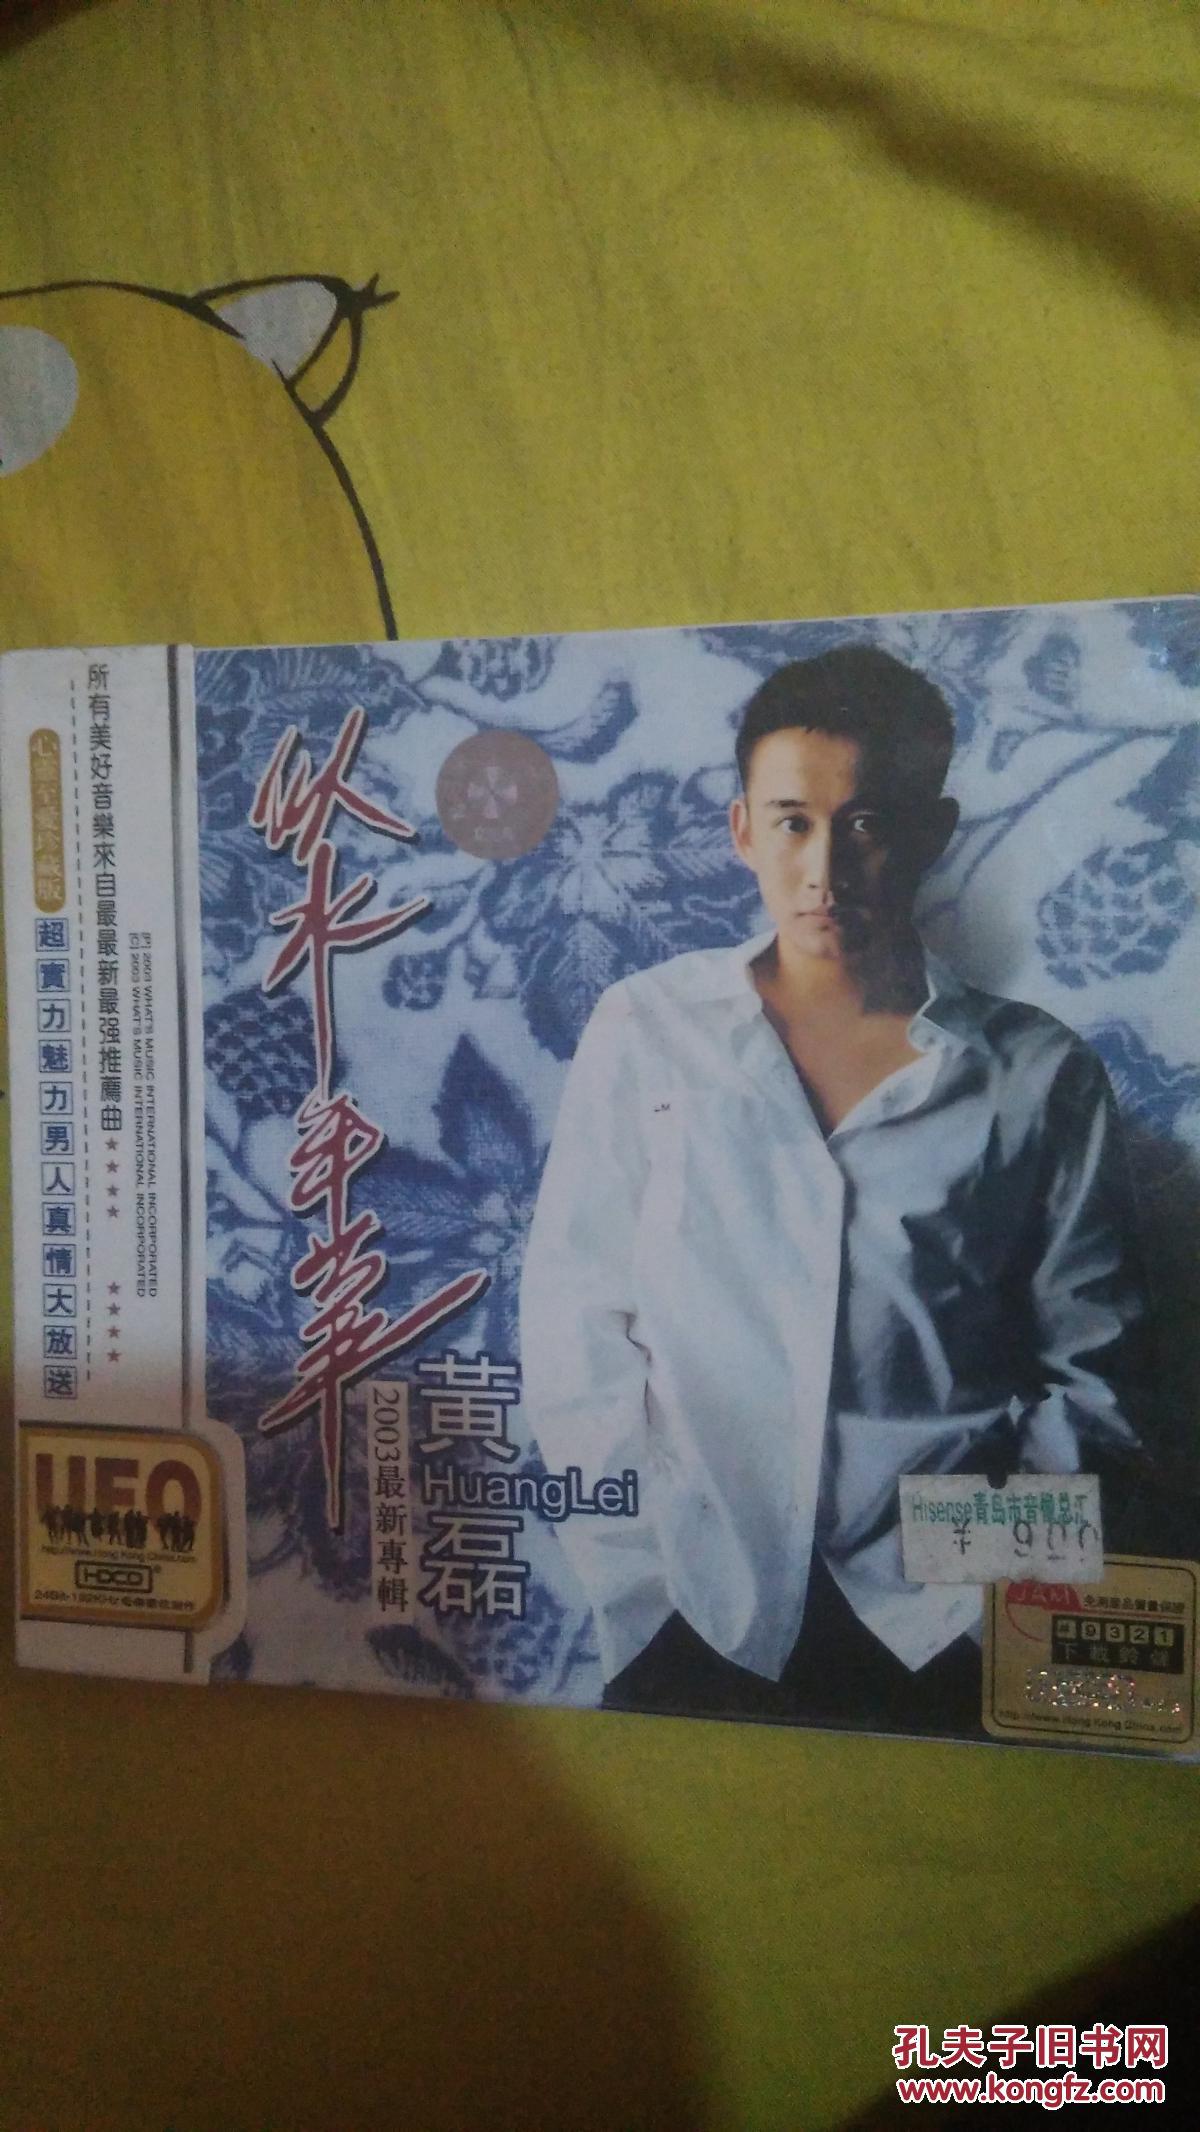 明星歌手歌曲音乐CD 黄磊似水年华2003最新专